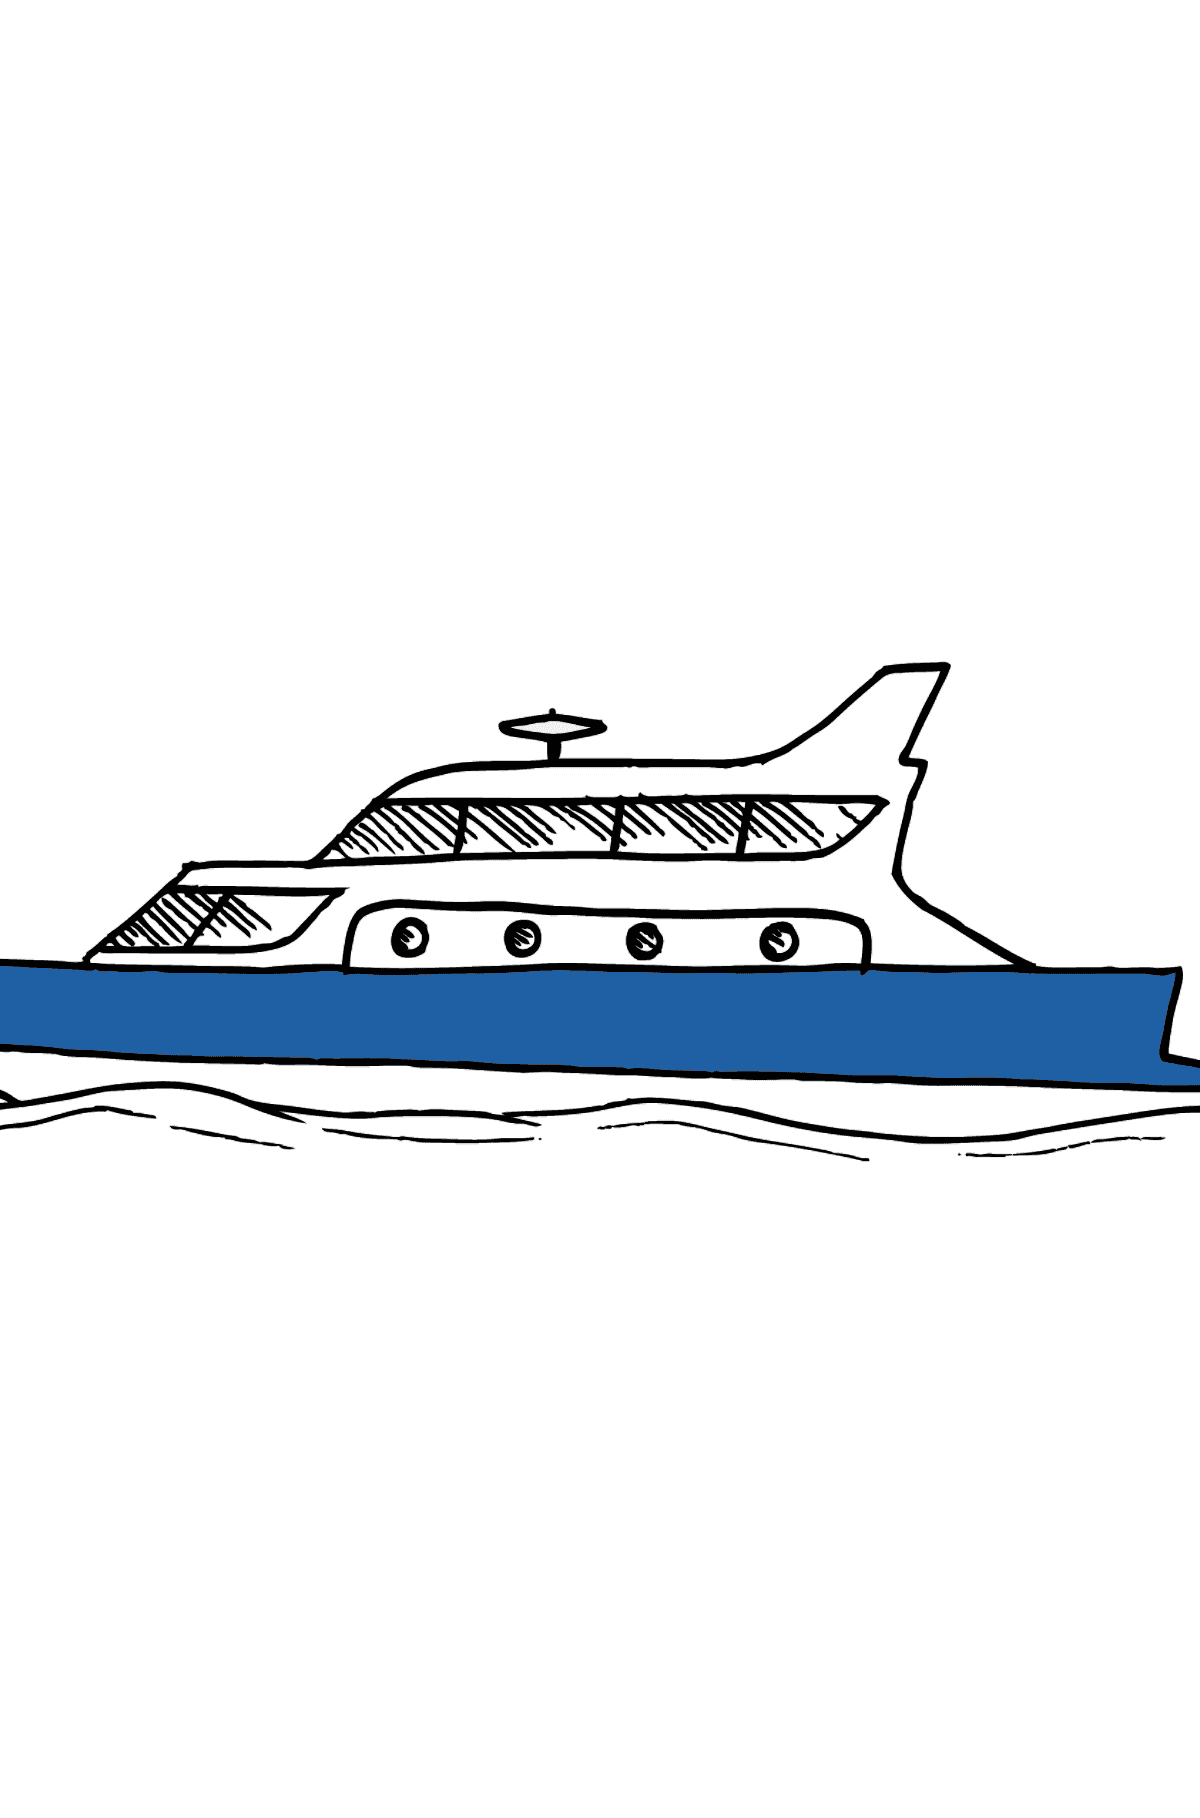 Disegno di Yacht da colorare - Disegni da colorare per bambini